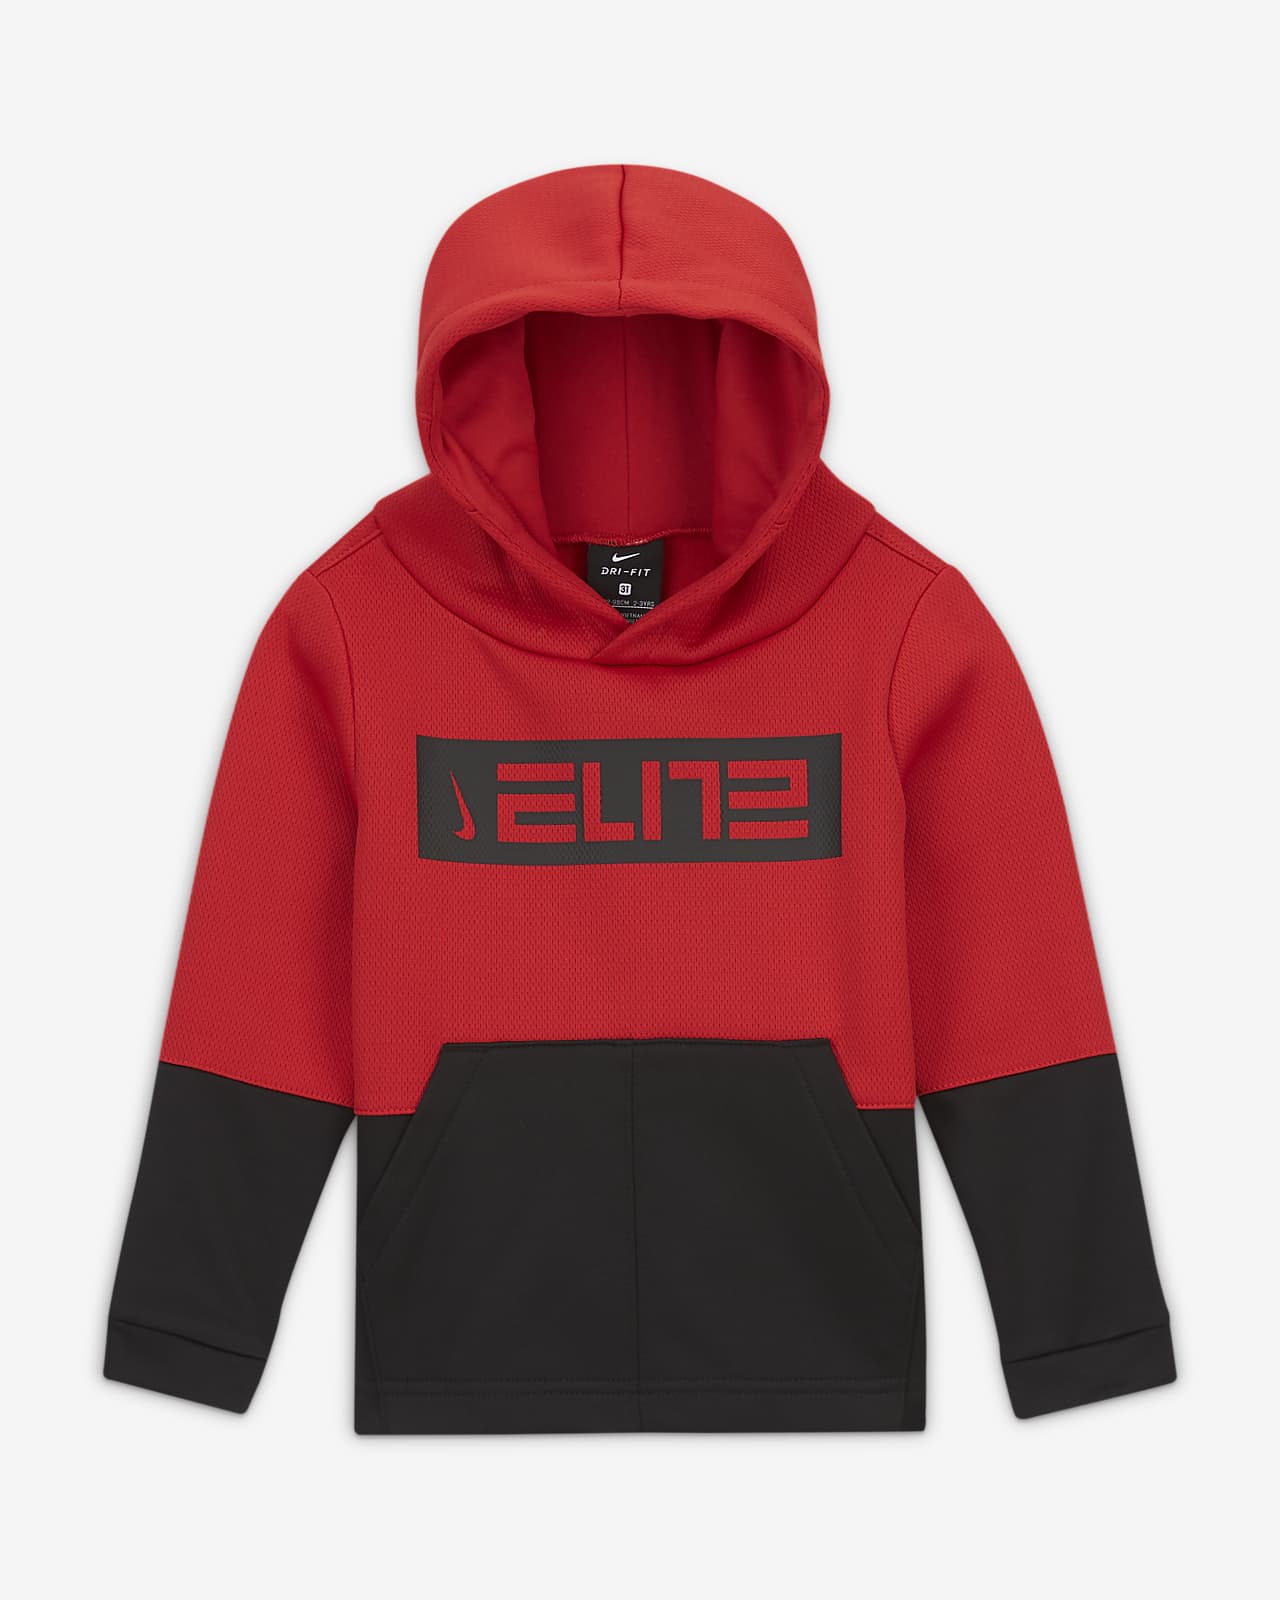 nike elite hoodies